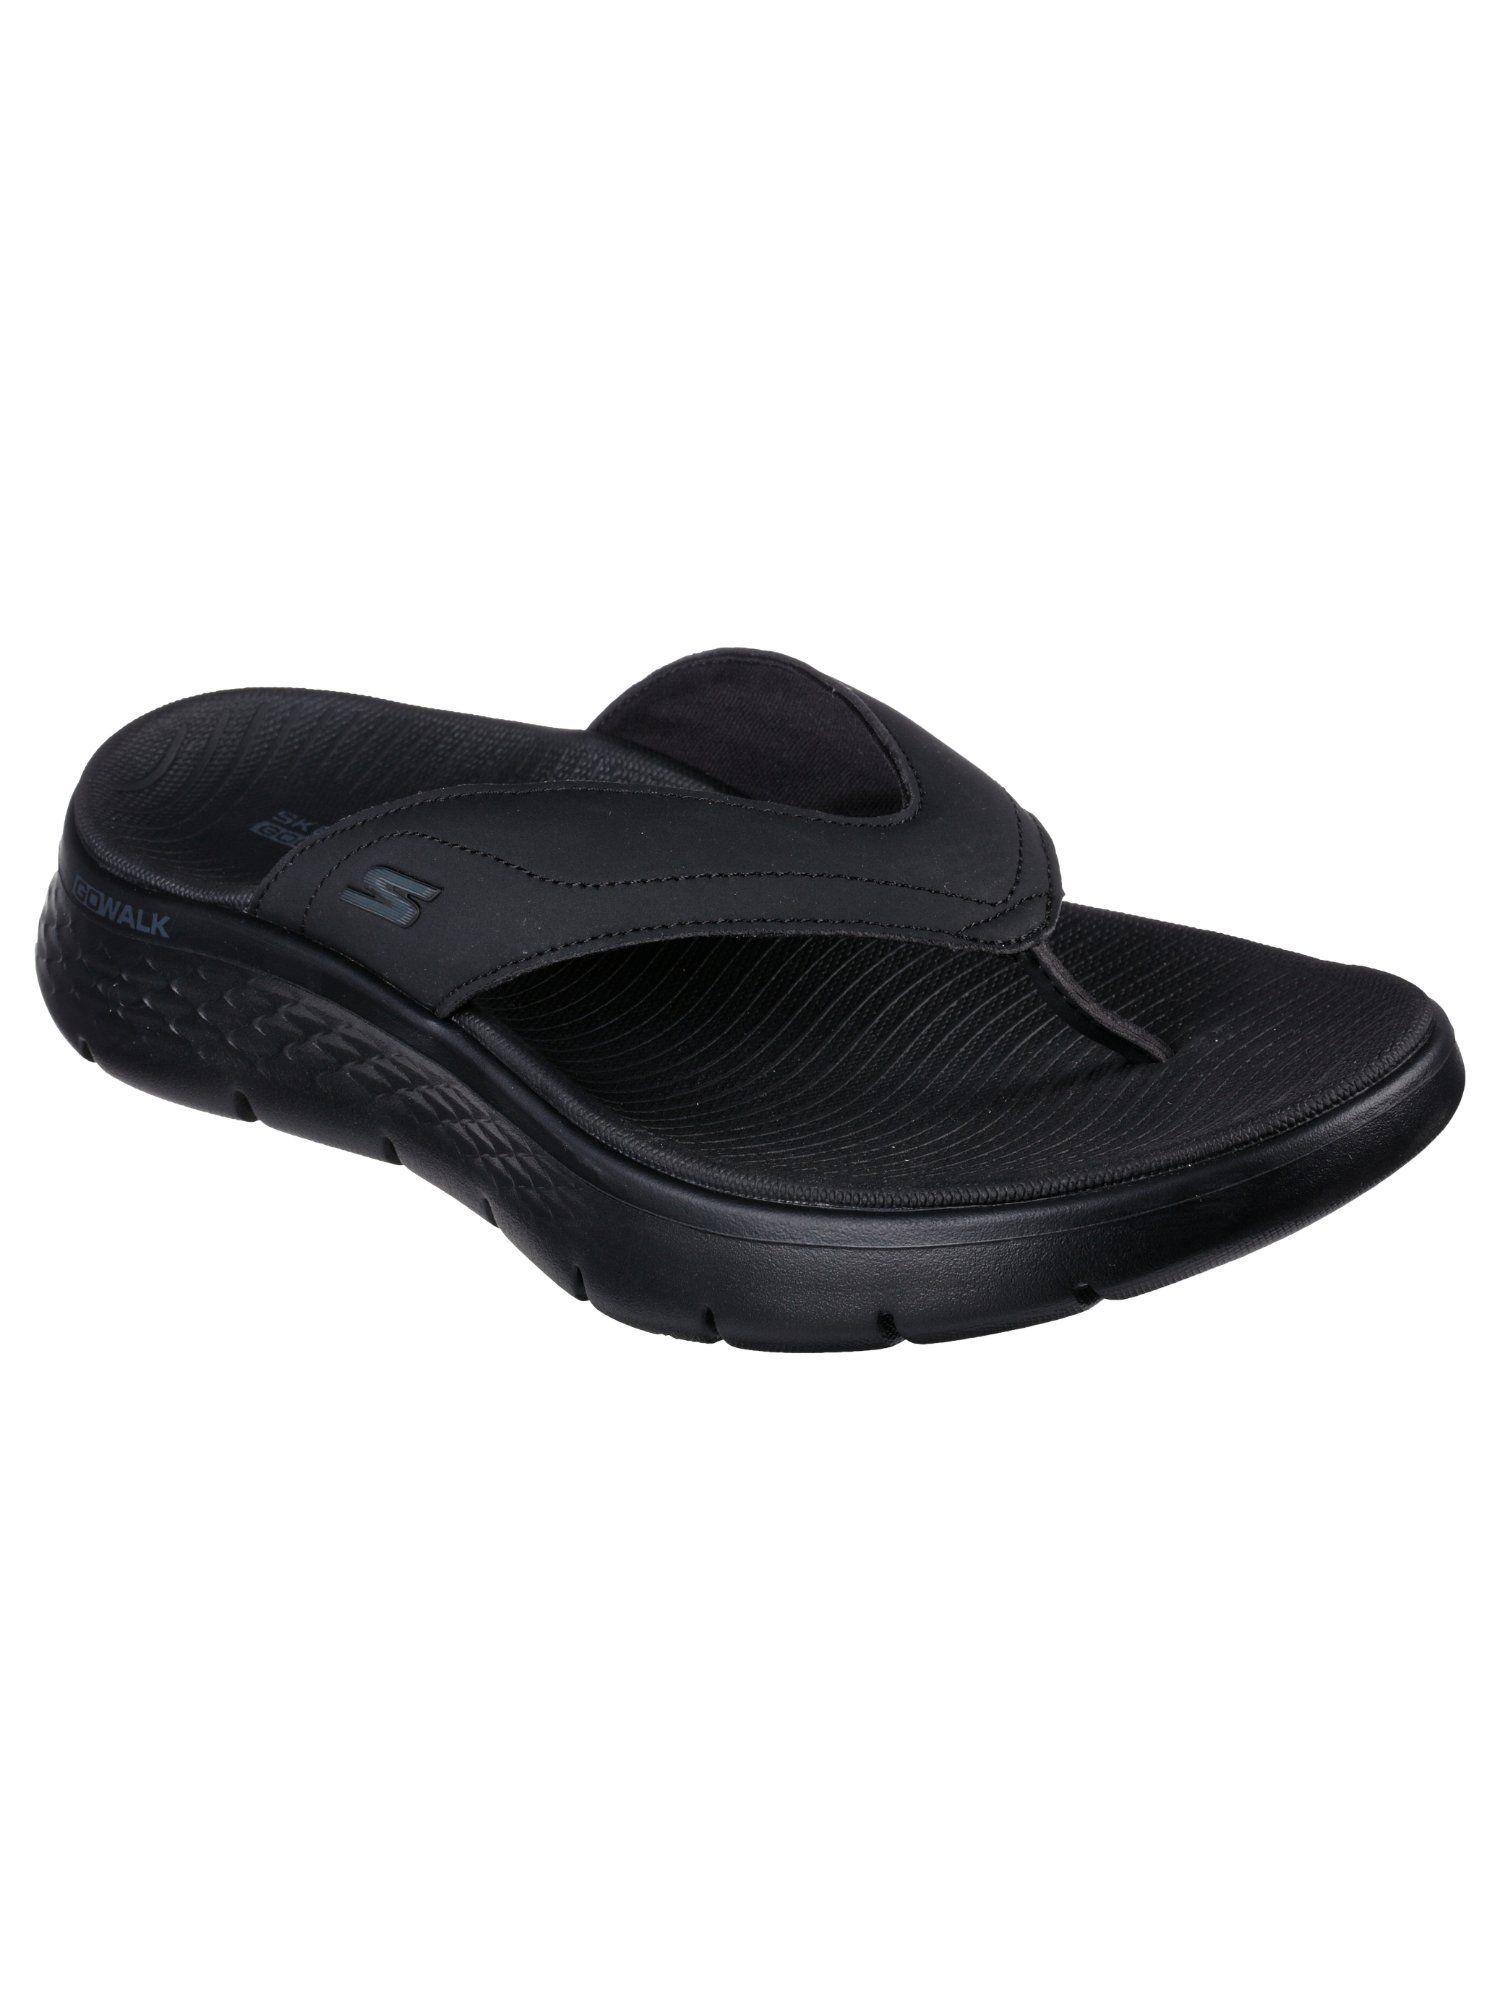 go-walk-flex-sandal-black-flipflops